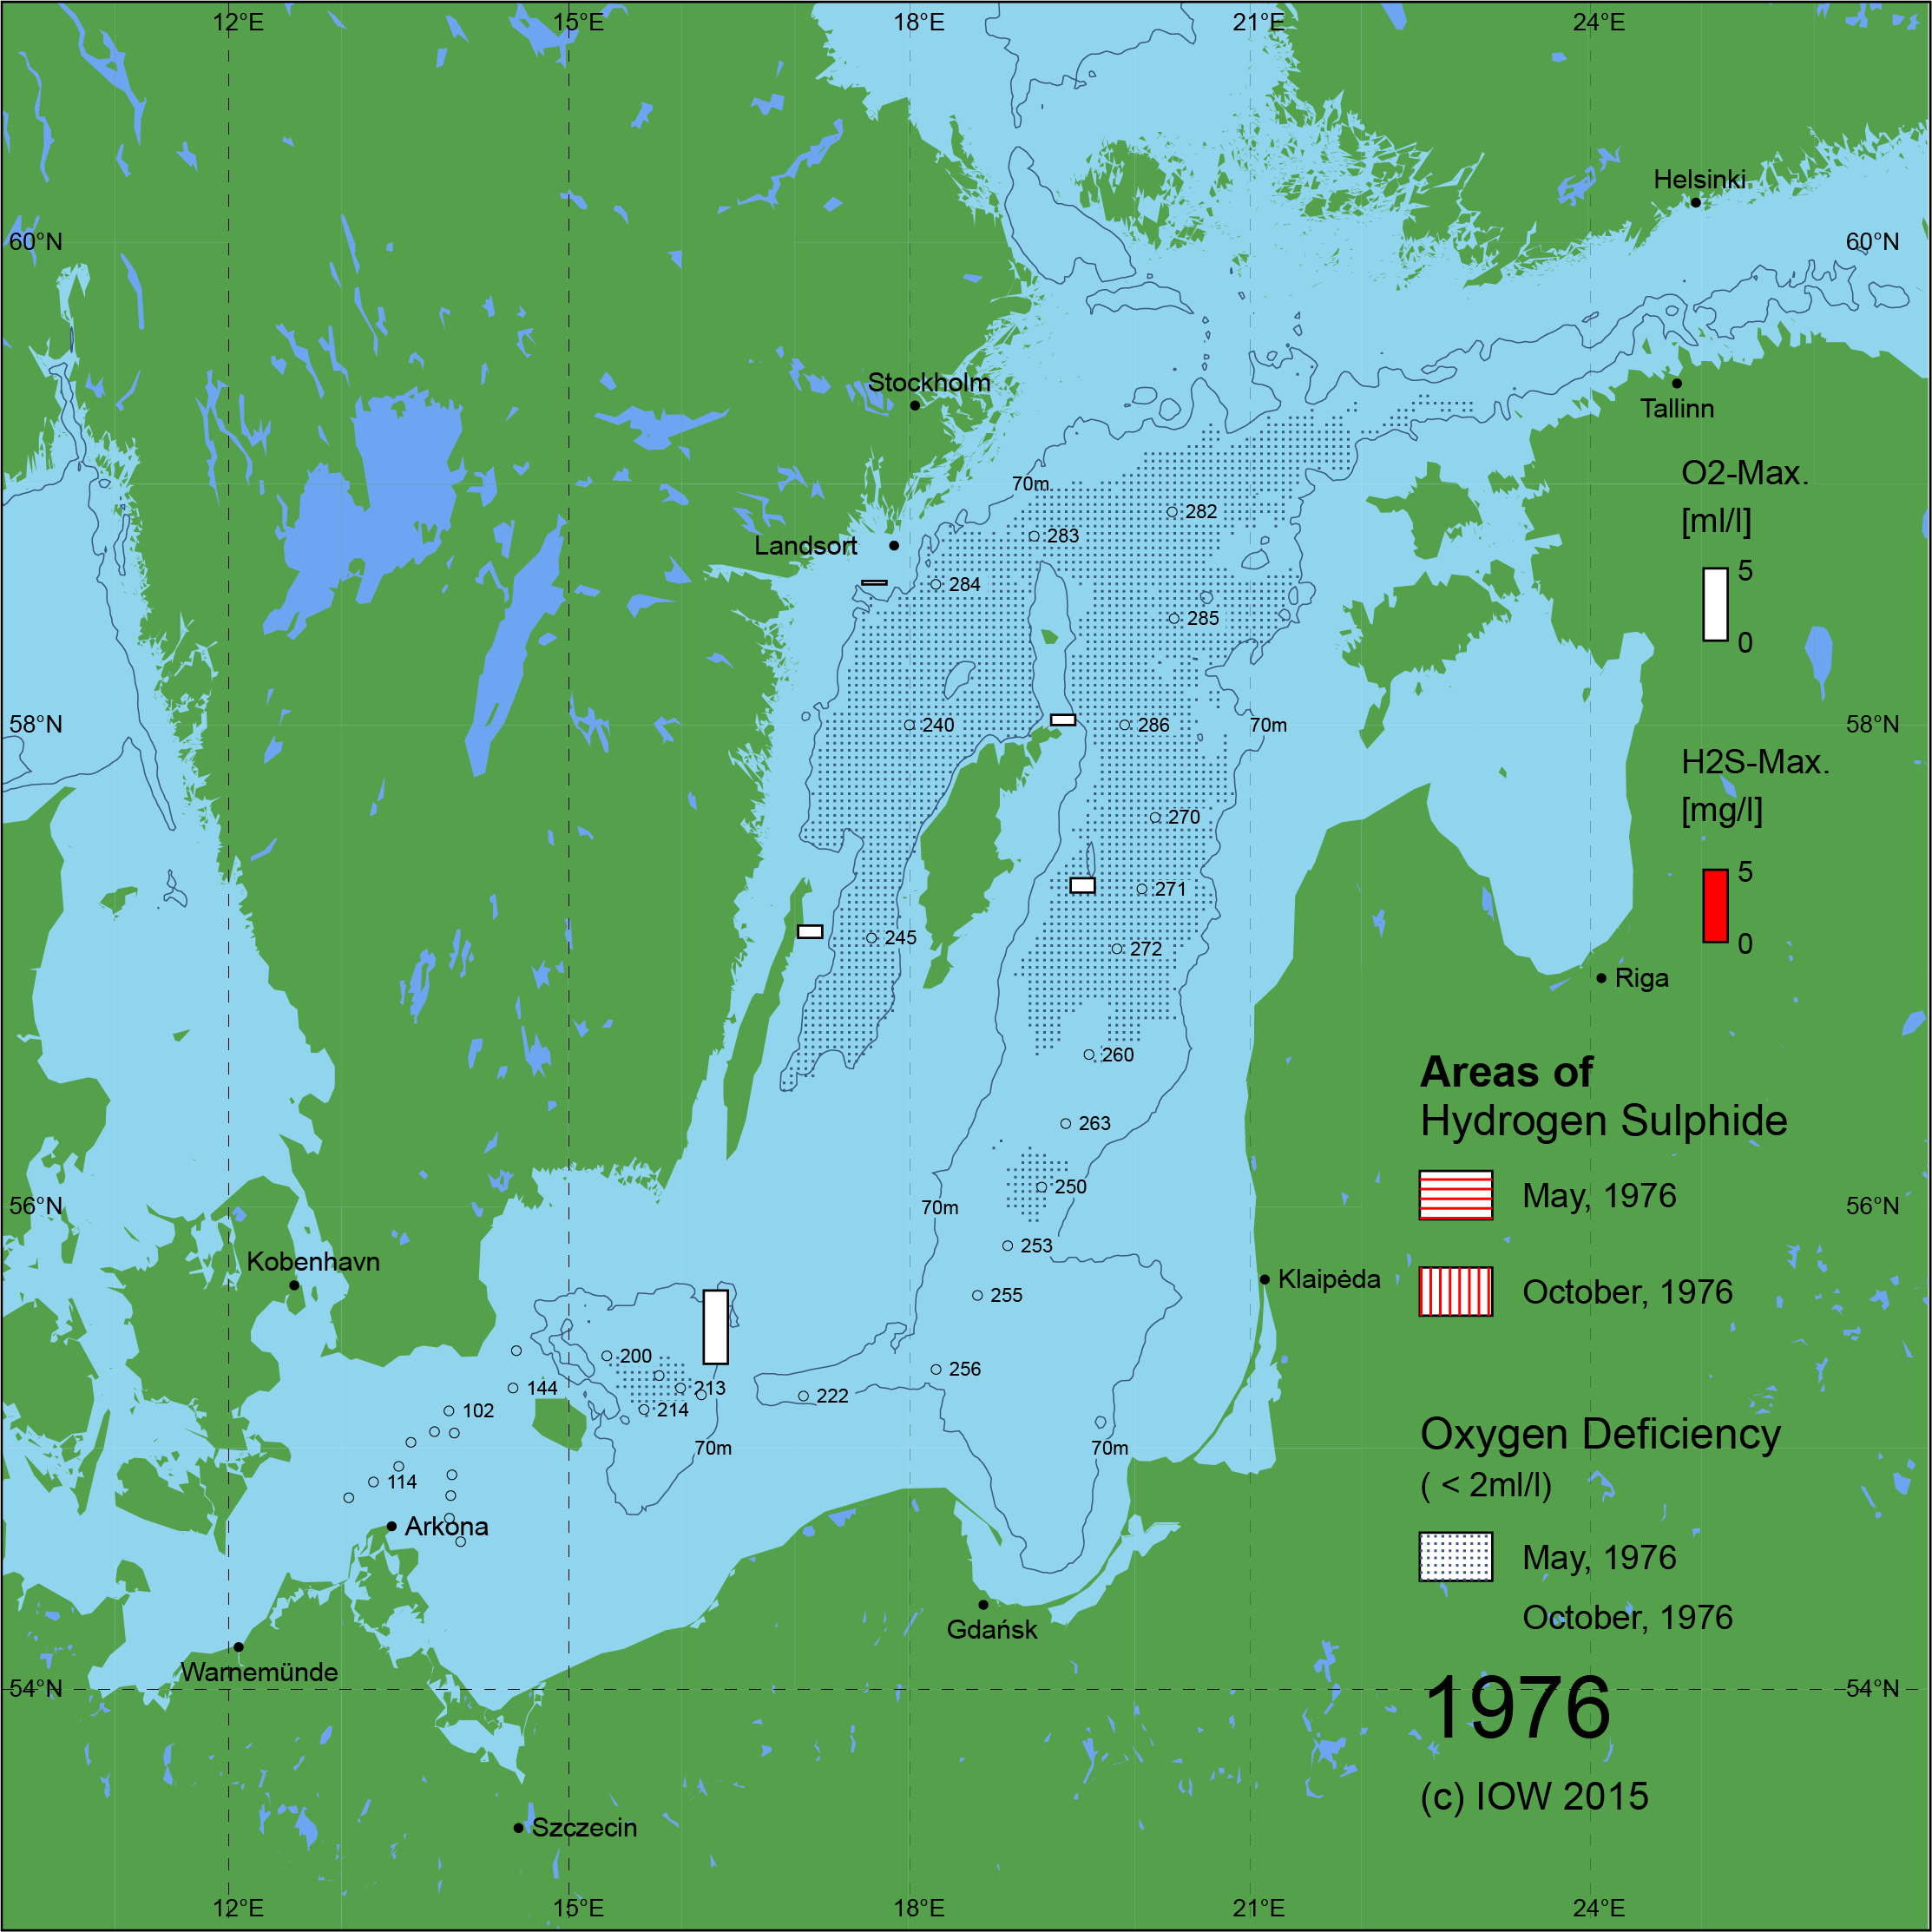 Sauerstoffarme und sauerstofffreie Gebiete in der Ostsee - 1976